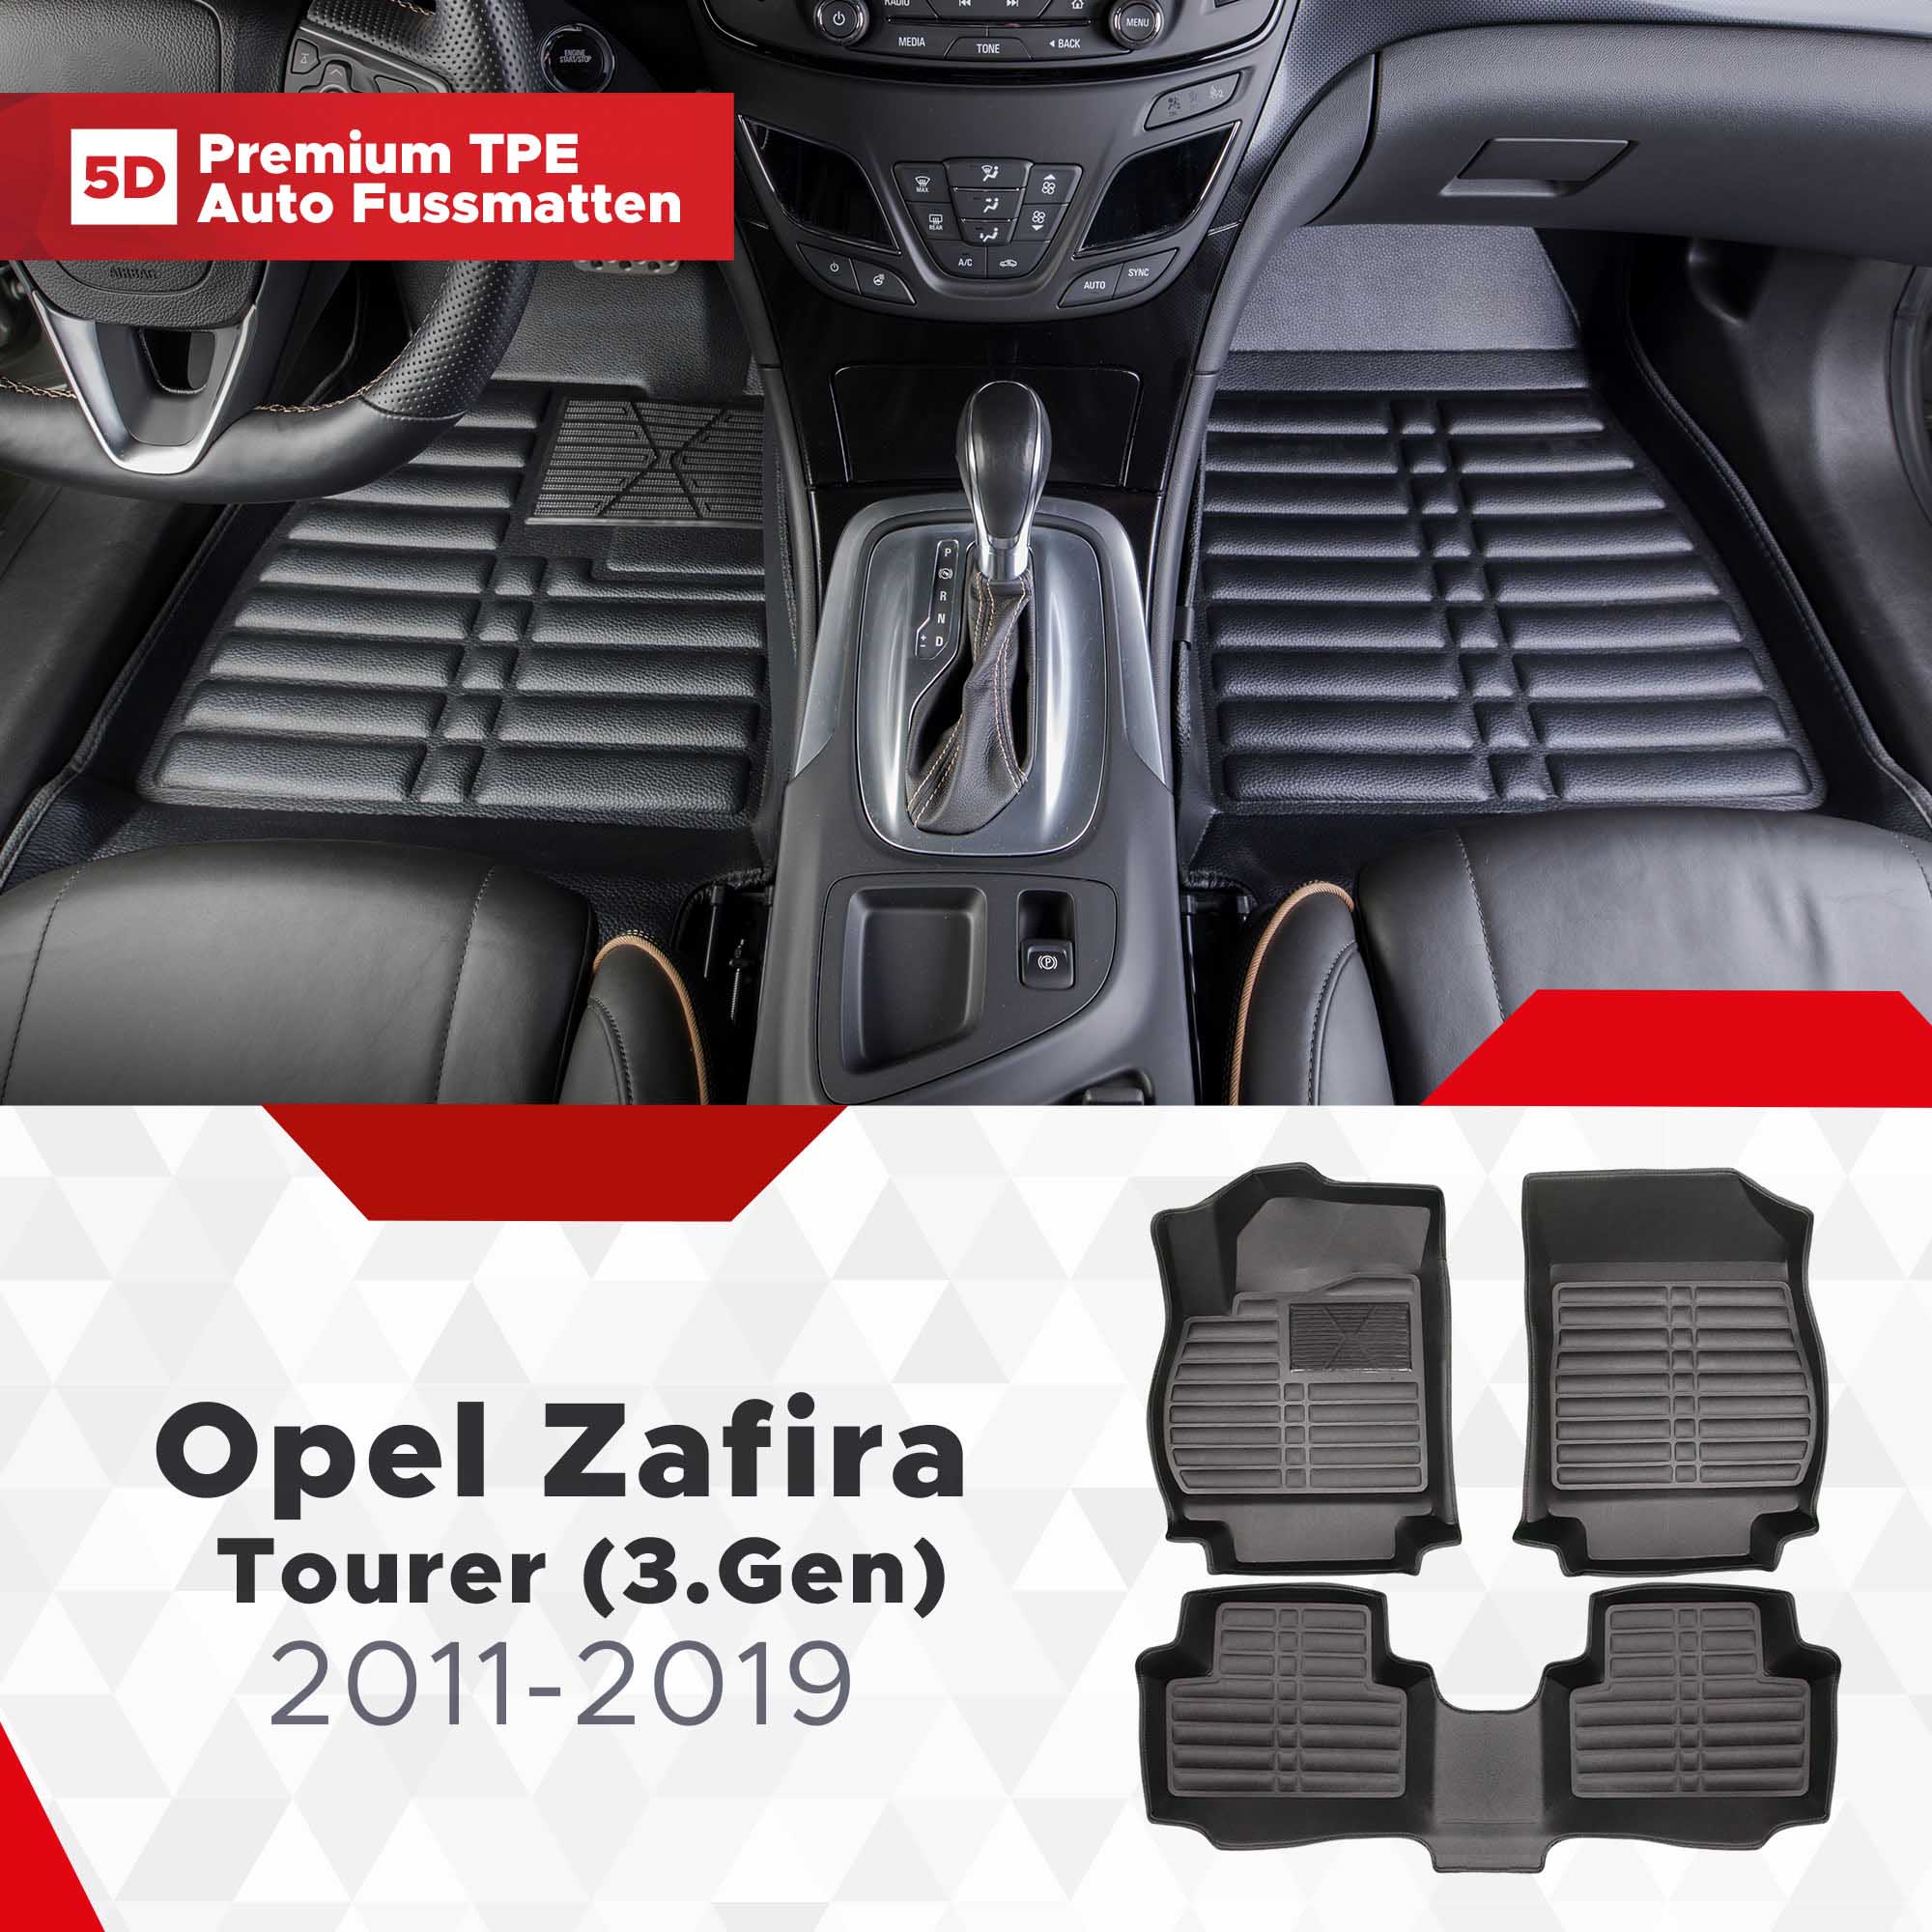 Zafira (3.Gen) Tourer Fussmatten TPE 2011-2019 5D Bj Opel